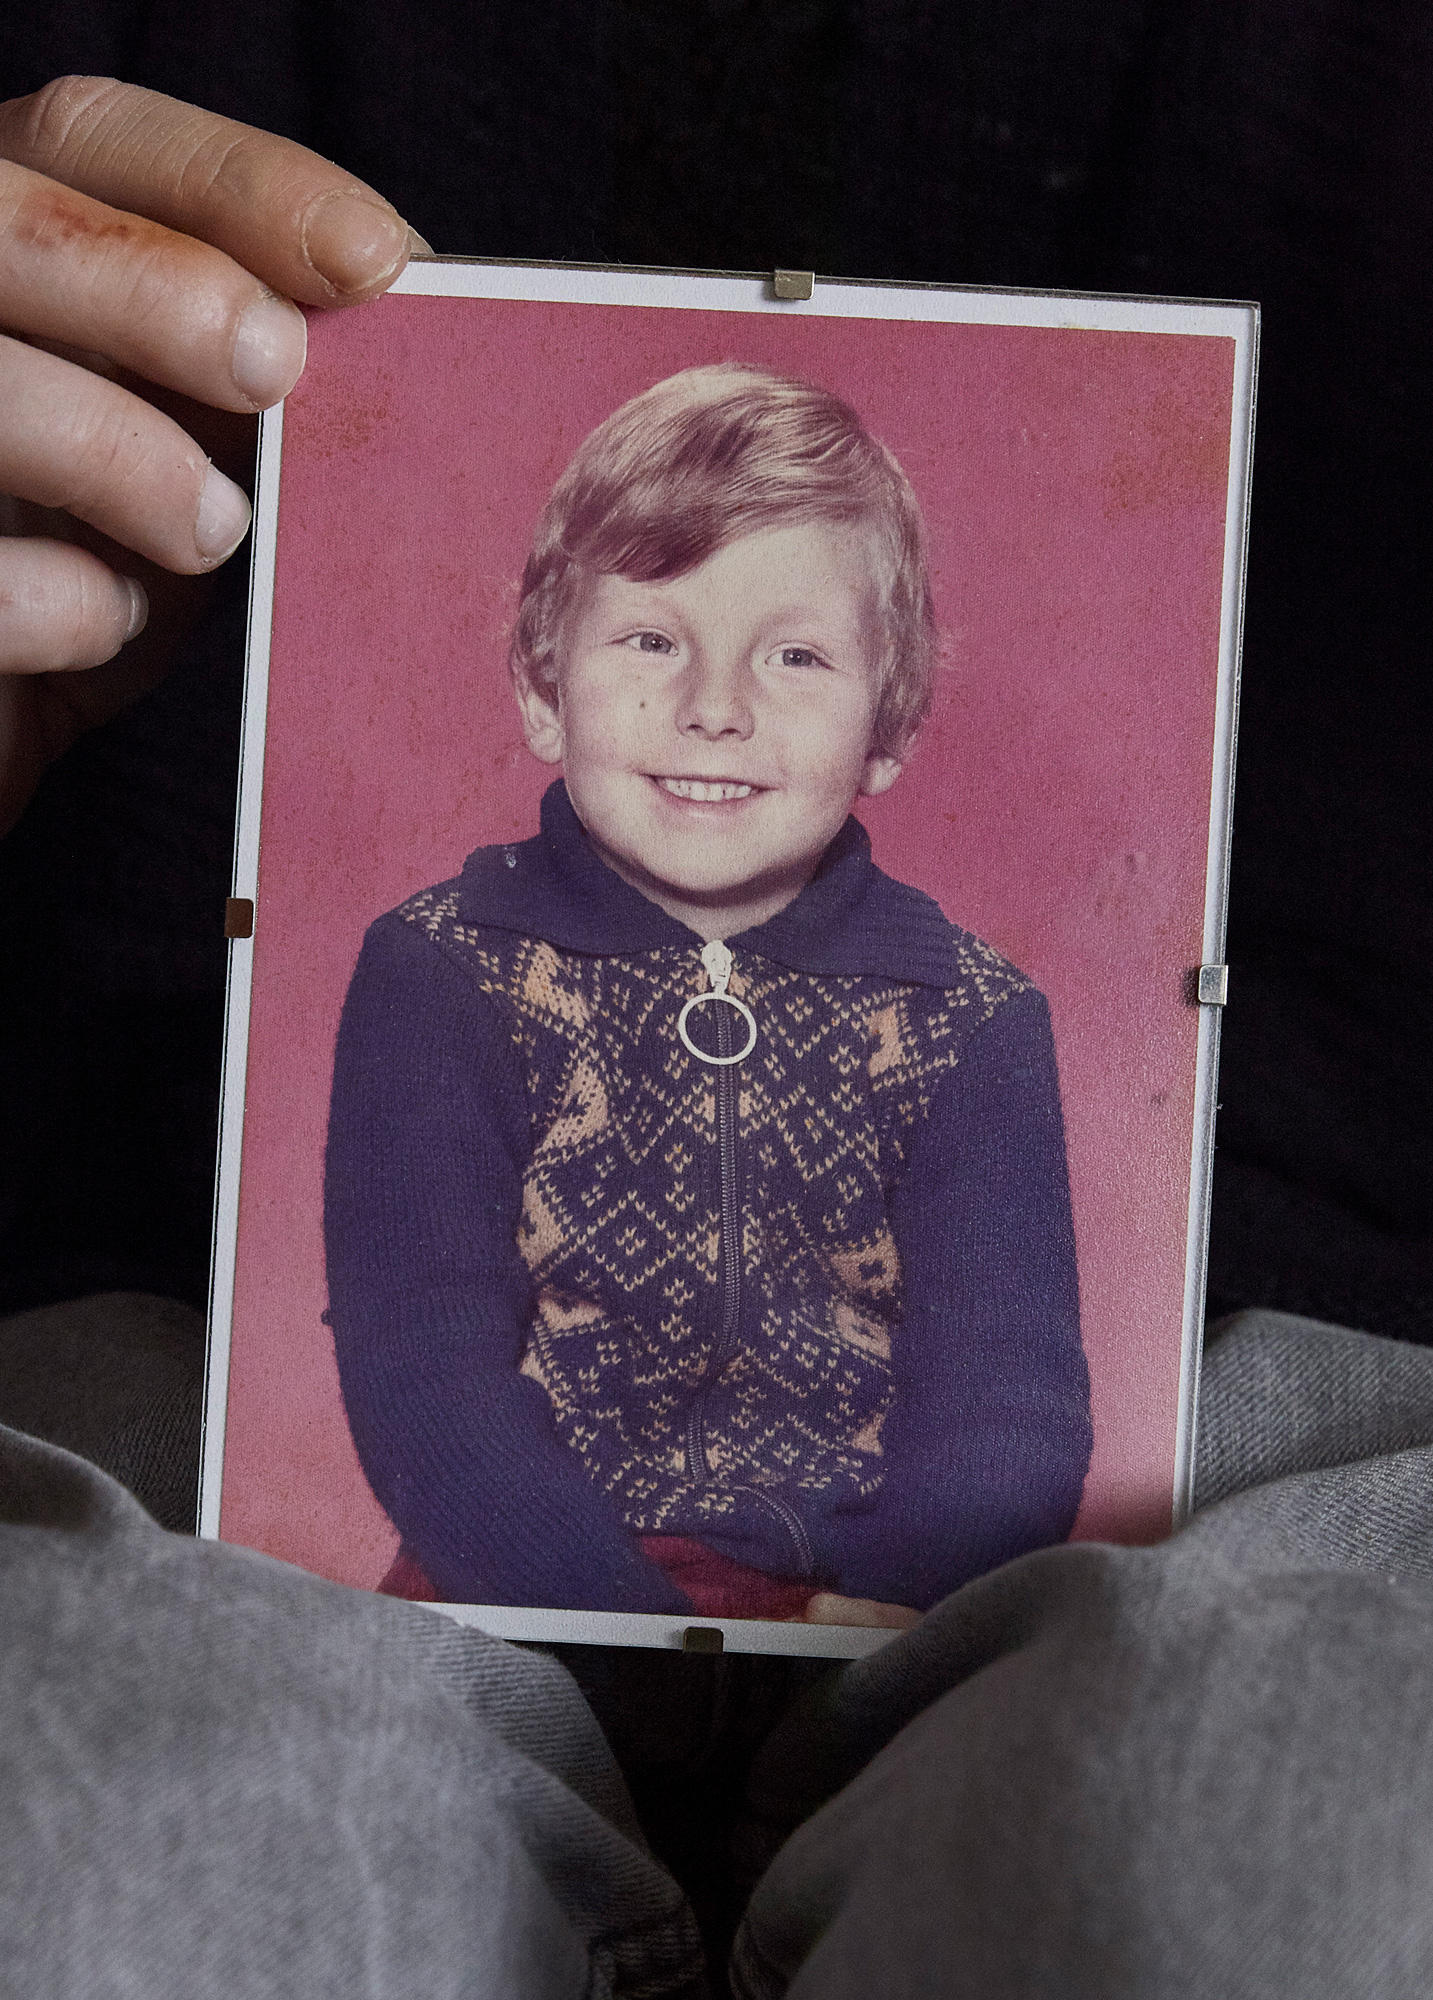 Fotografie von einem Jungen mit Strickjacke aus den 70er Jahren,=ъ in einem Glasrahmen